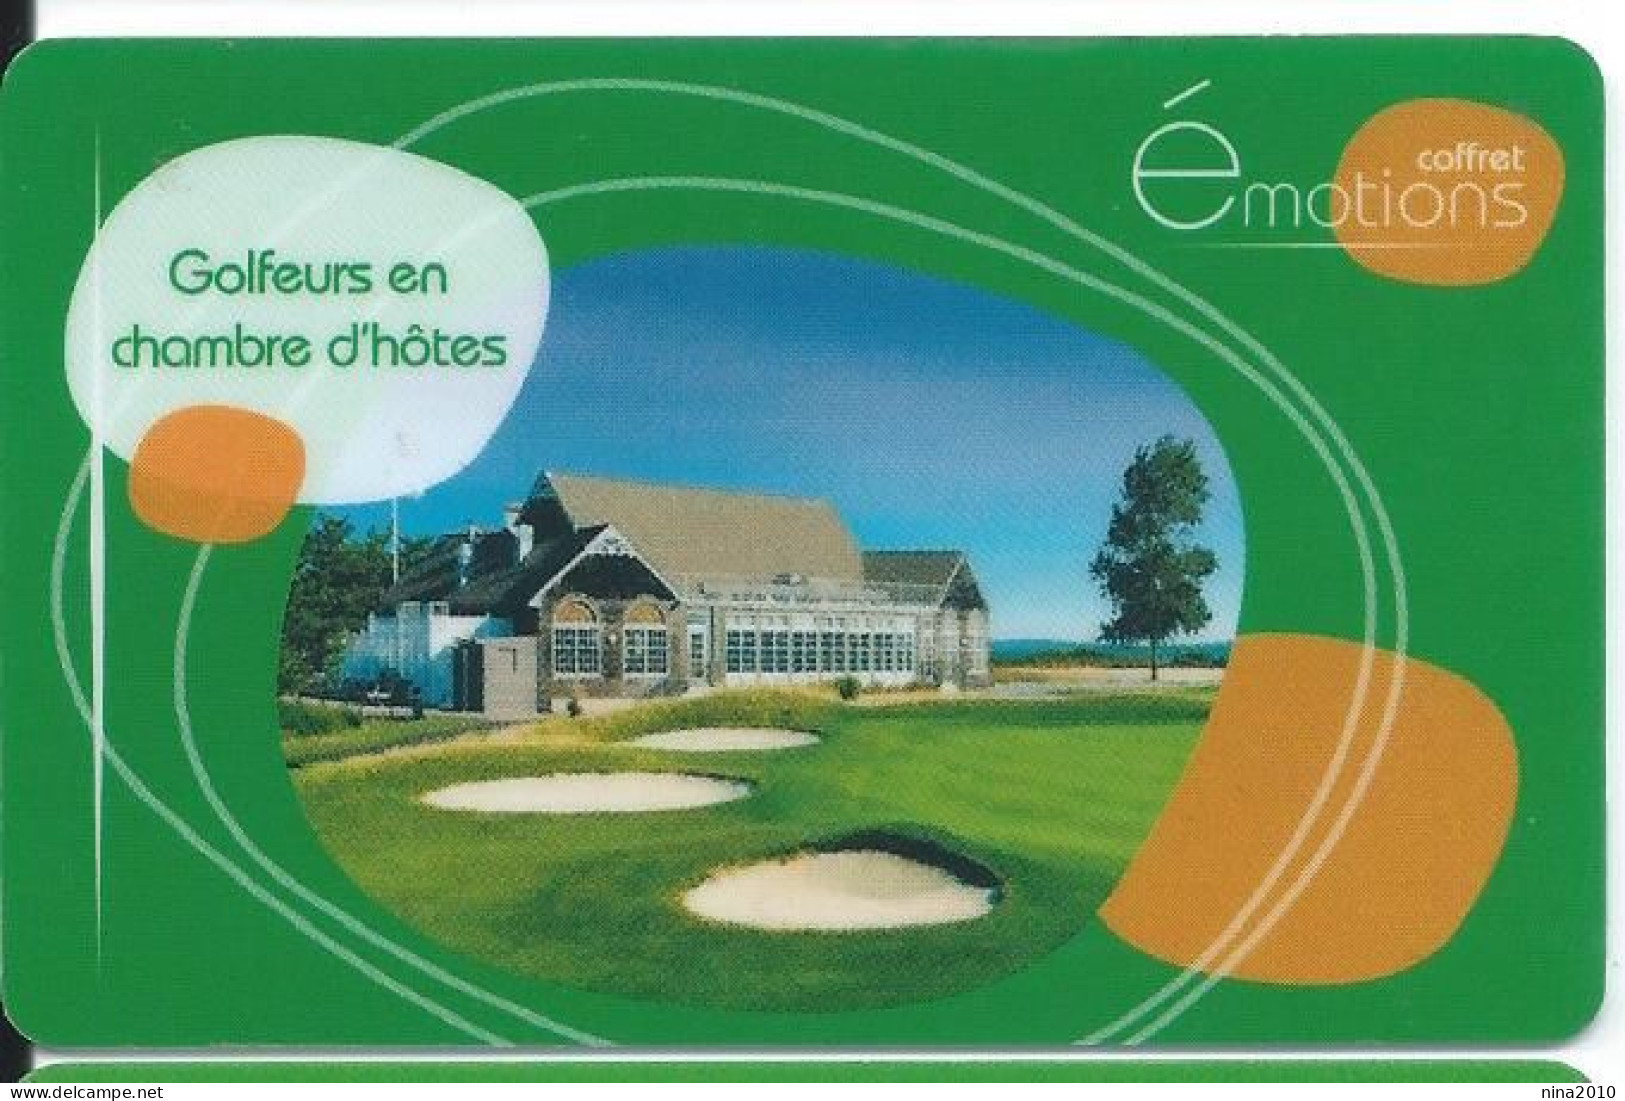 Carte Cadeau - Carrefour / émotions  - VOIR DESCRIPTION Avant Enchères -  GIFT CARD /GESCHENKKARTE - Gift Cards